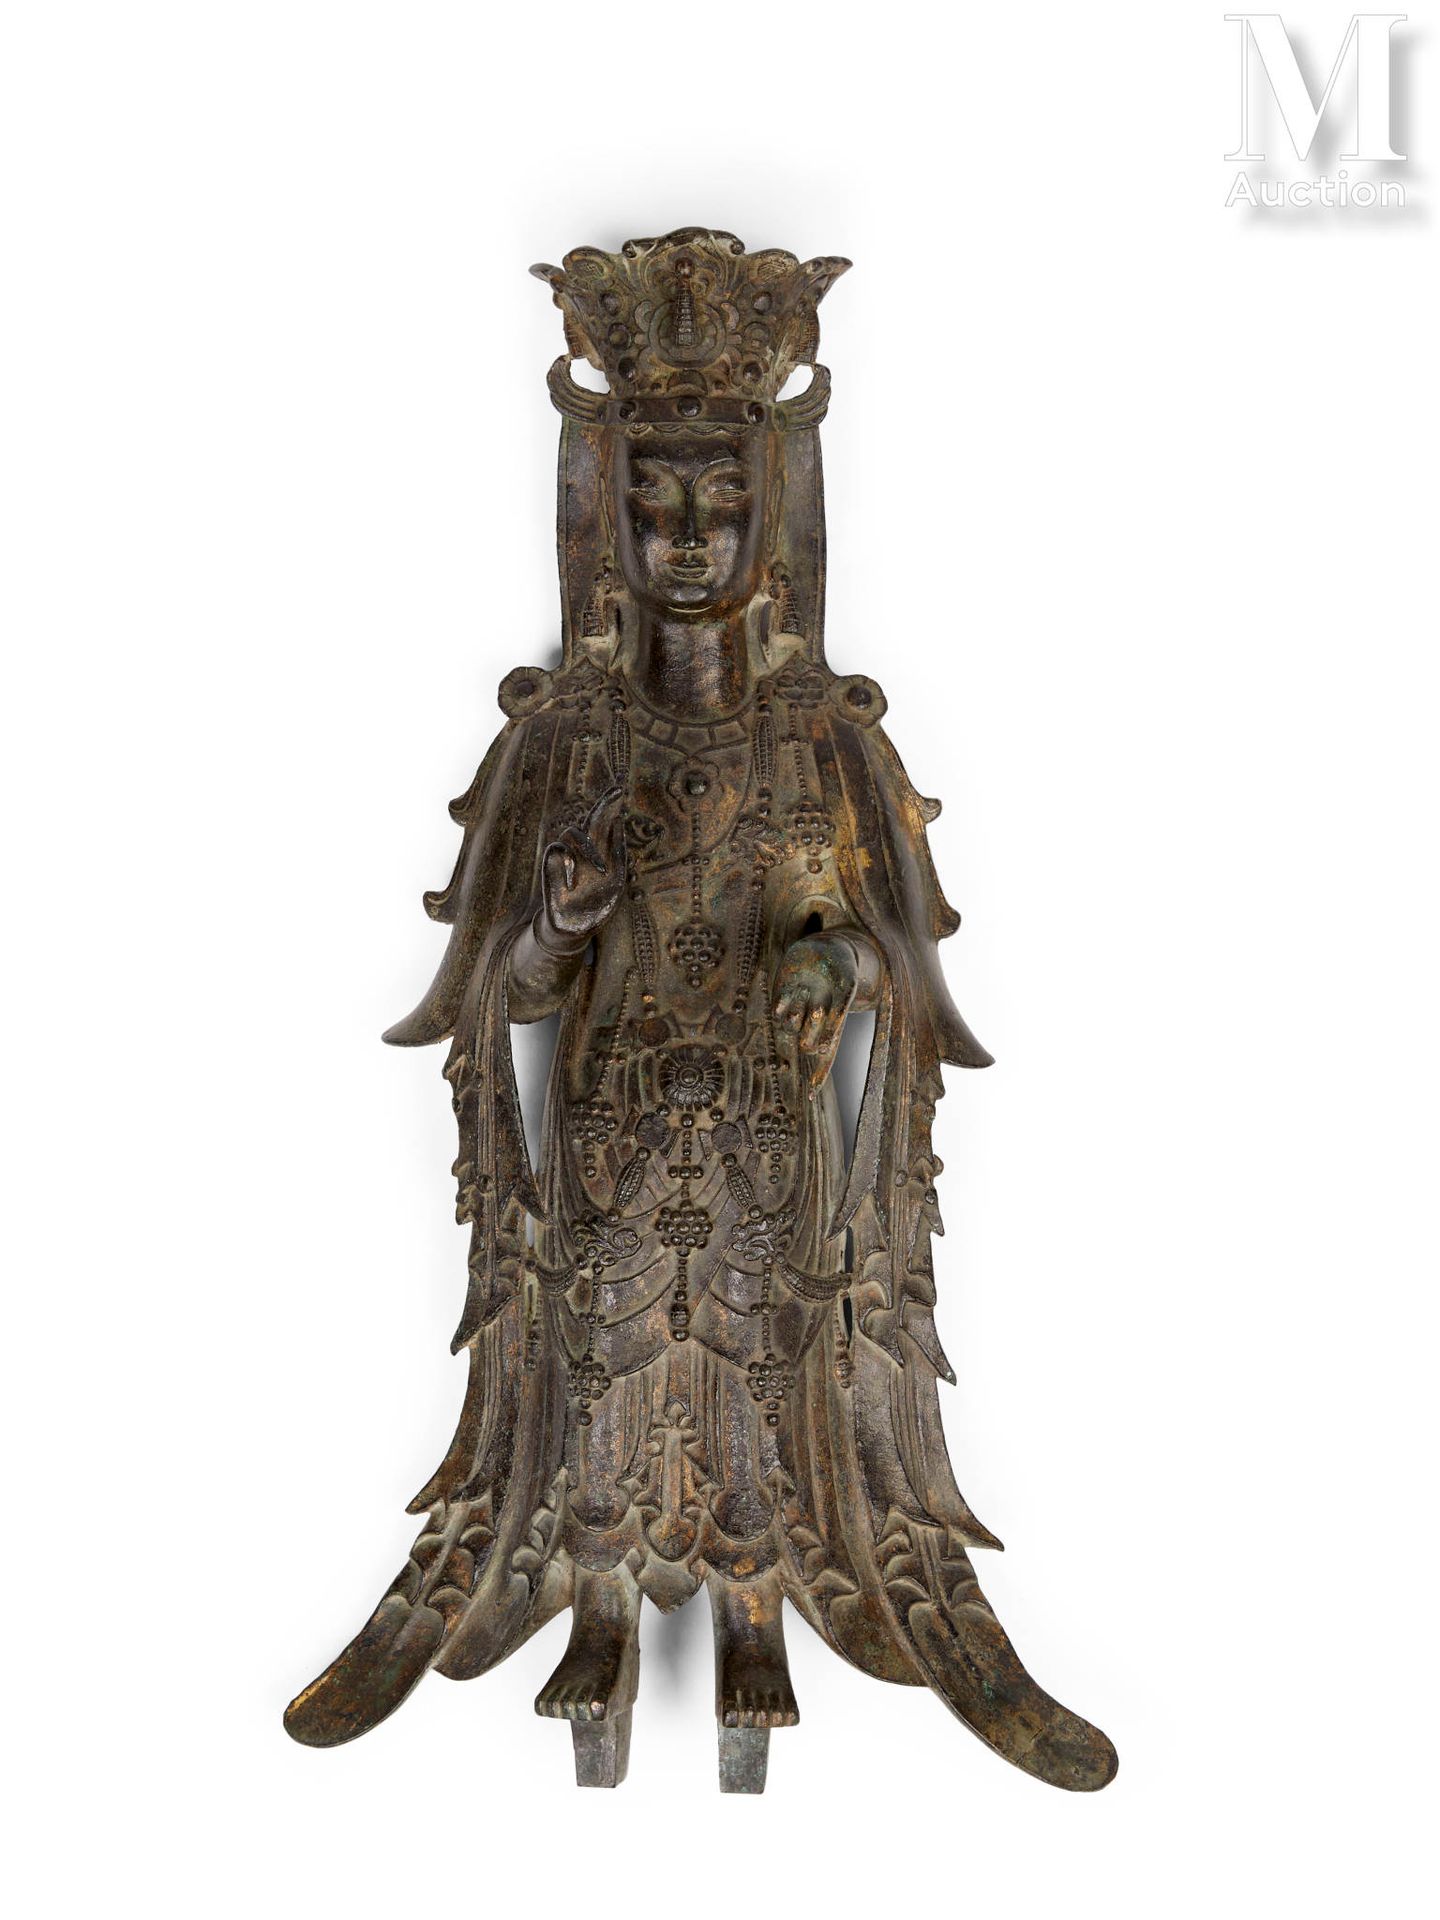 CHINE, Dynastie Sui (581-618) Bedeutende Bronzestatue von Guanyin Pusa

Die Gott&hellip;